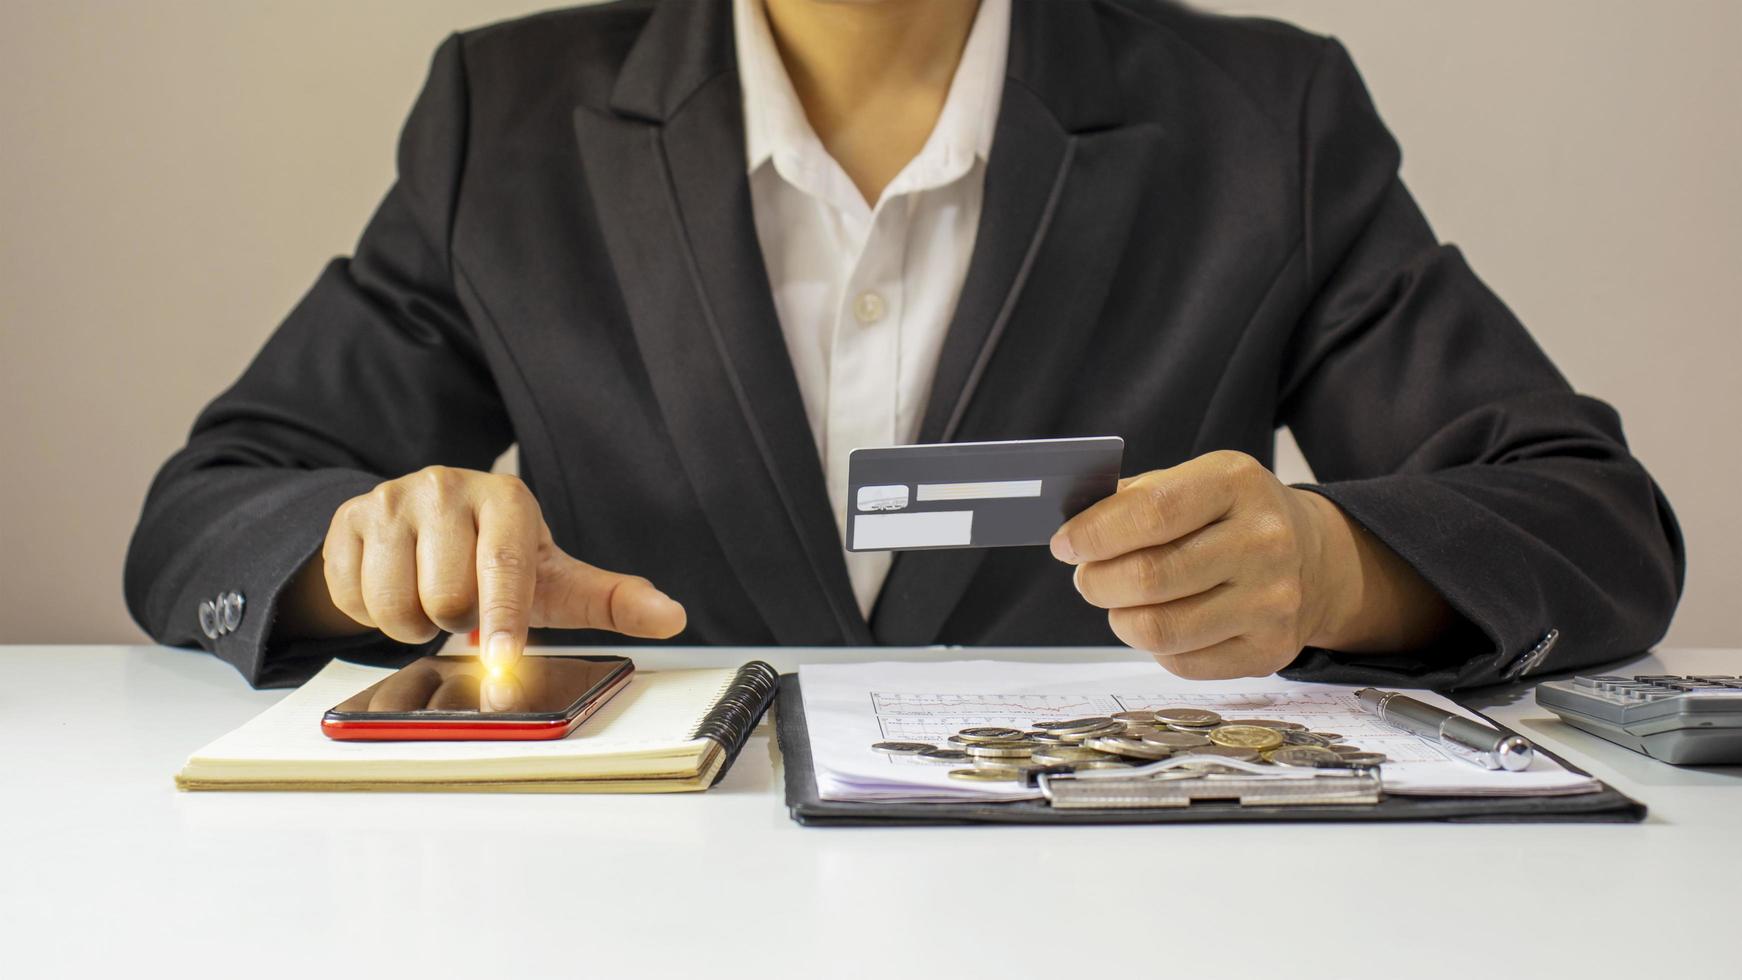 asiatisk kvinna betalar med kreditkort online medan du beställer online hemma, transaktionsidé med mobilbankapplikation. foto